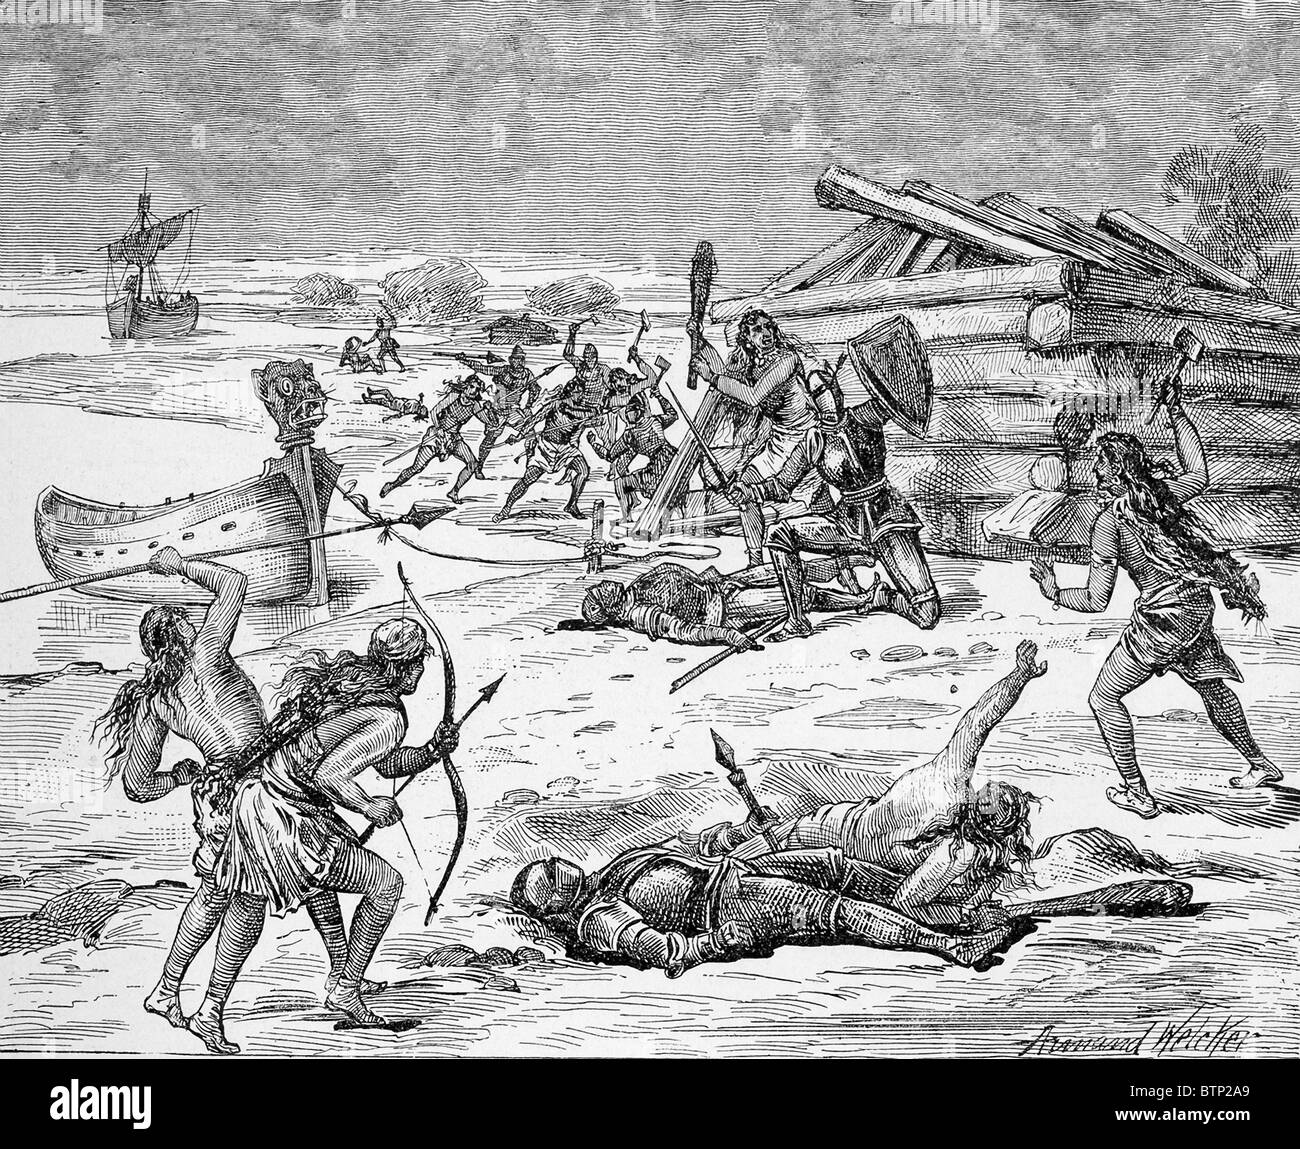 Überzeugt von Bruder Leif Ericson nach Grönland kommen, Thorvald Tat und wurde später von Eingeborenen getötet. Stockfoto